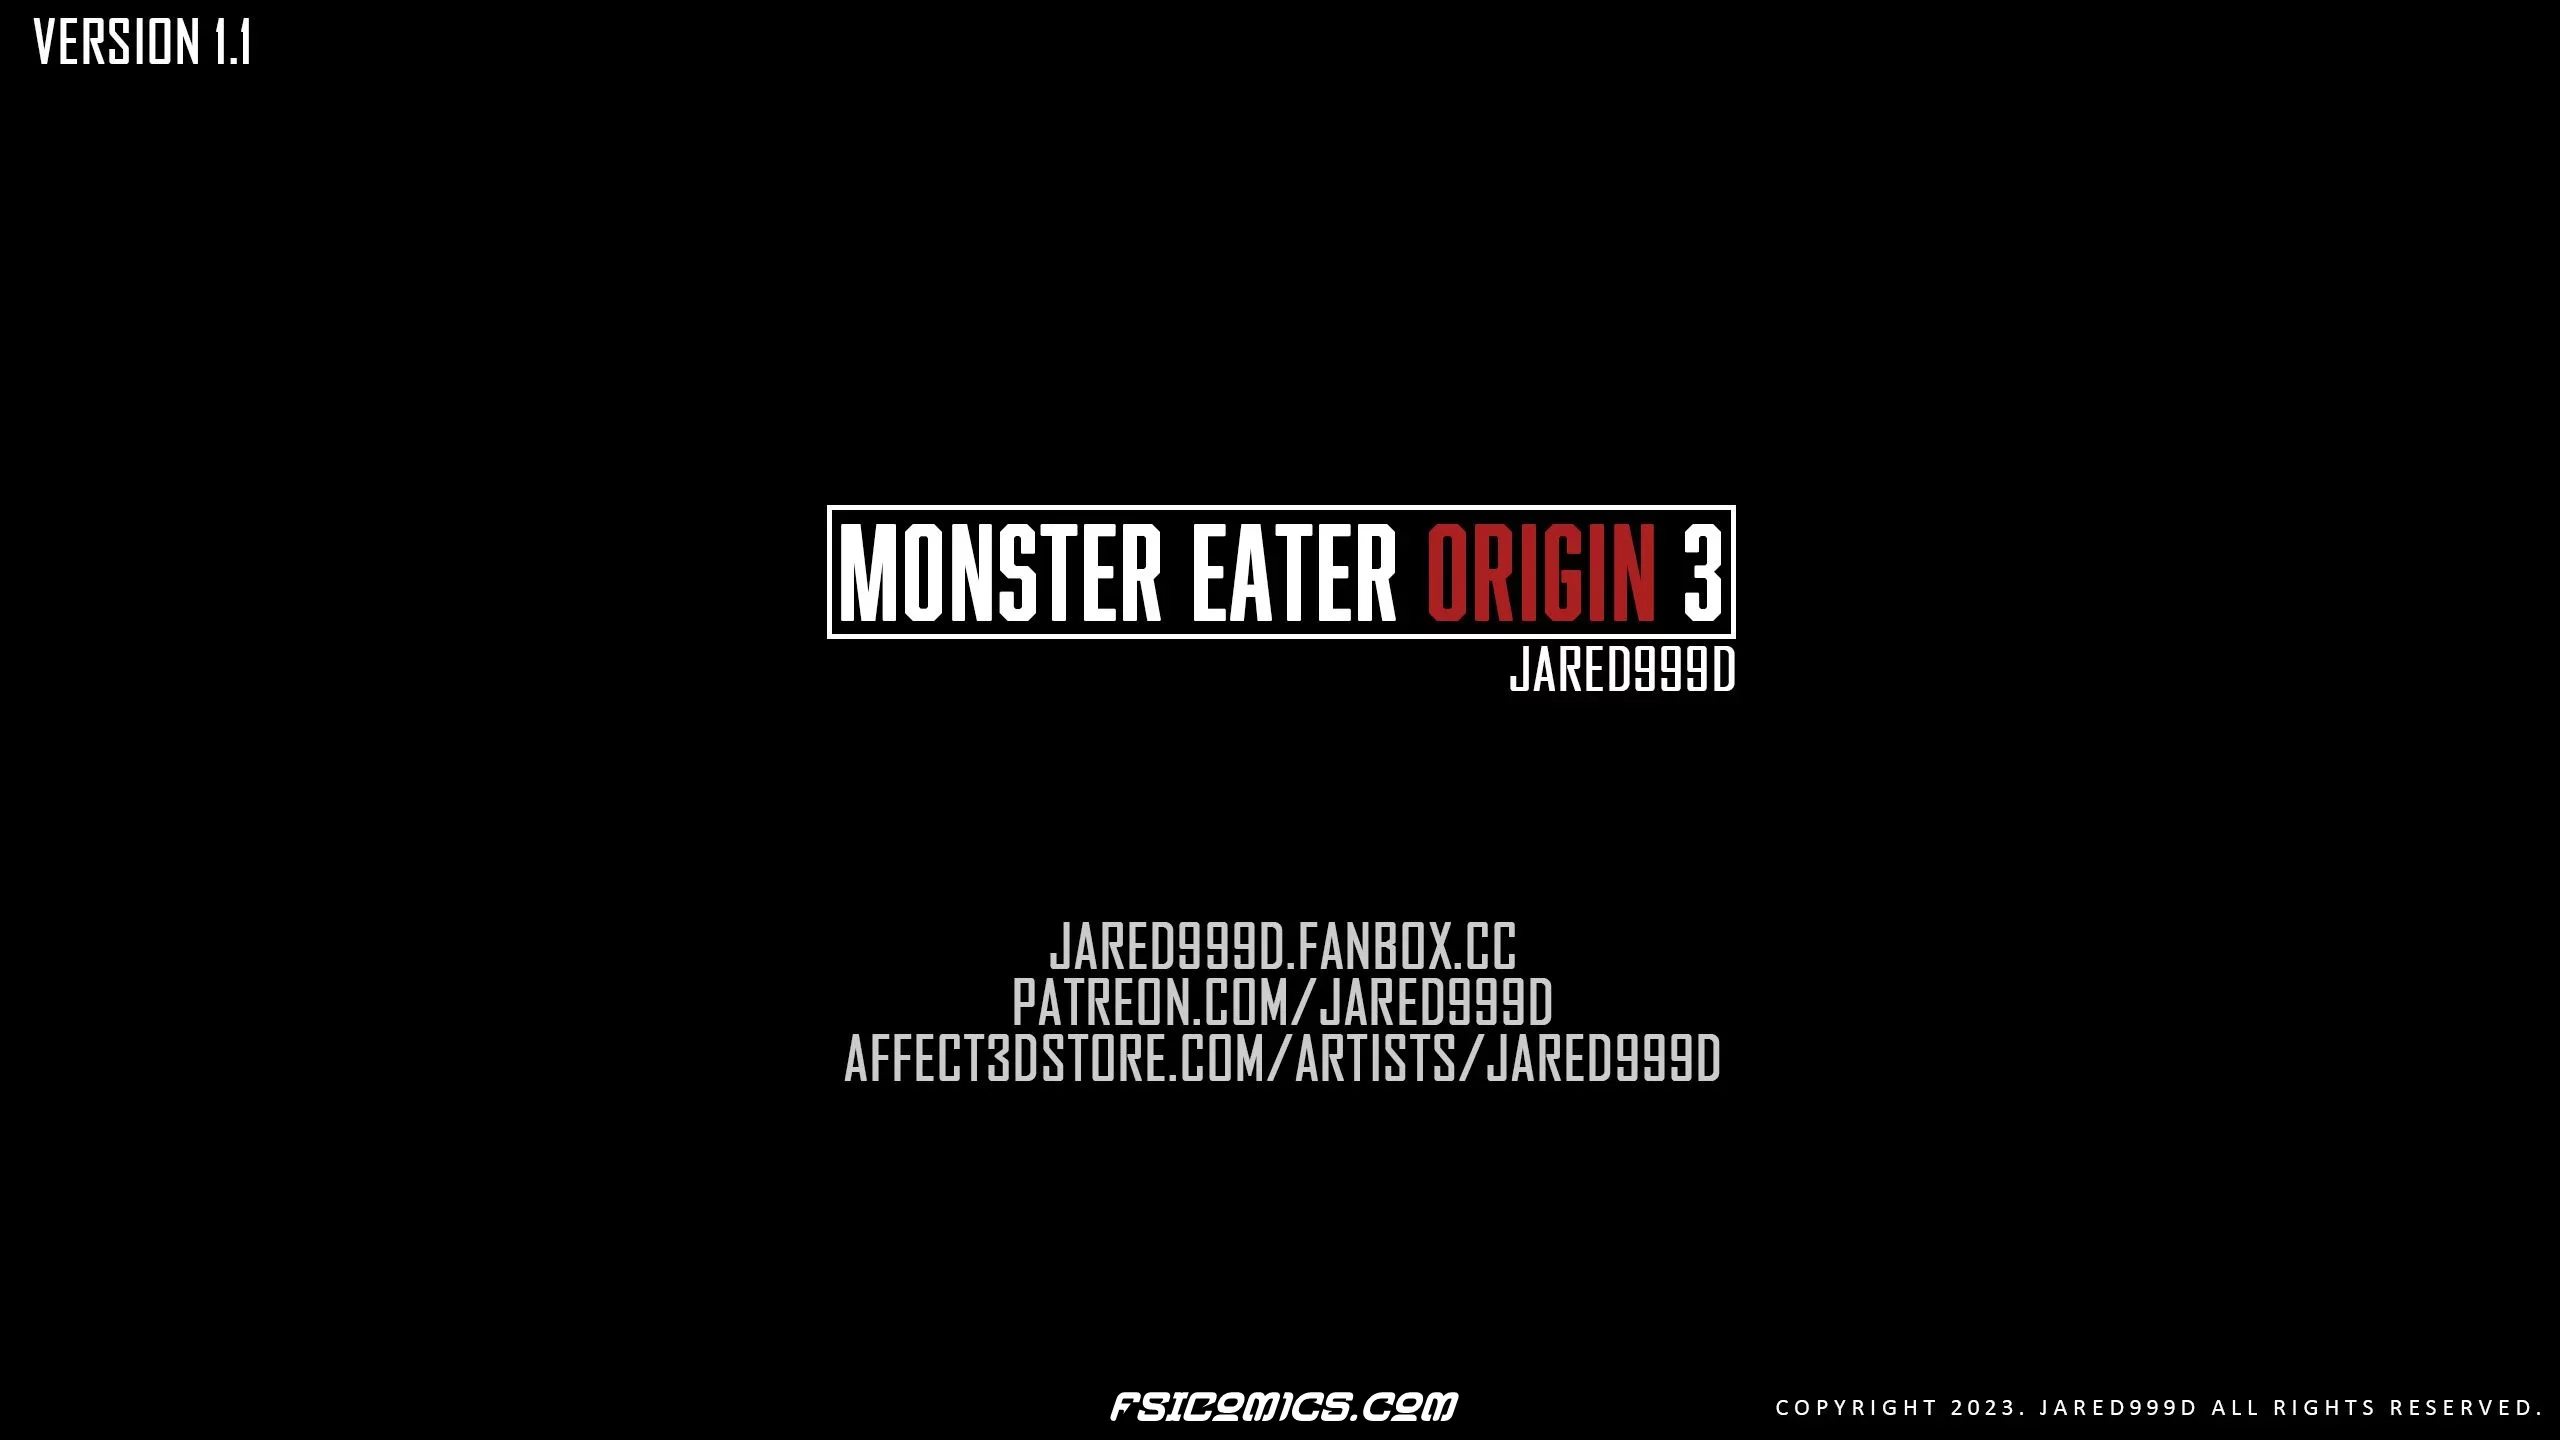 Monster Eater Origins Chapter 3 - Jared999D - 47 - FSIComics